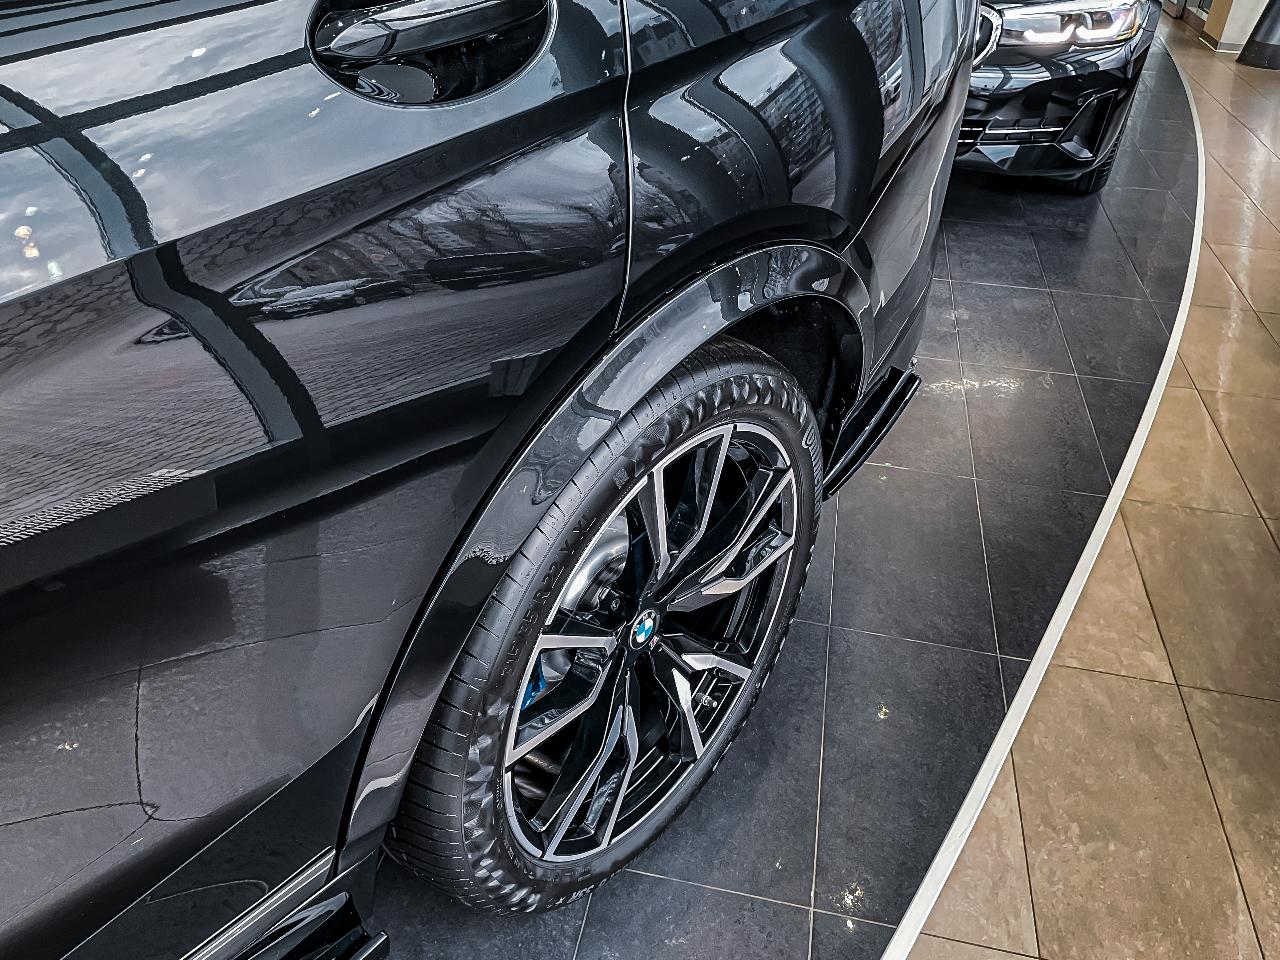 Расширение кузова для BMW X7